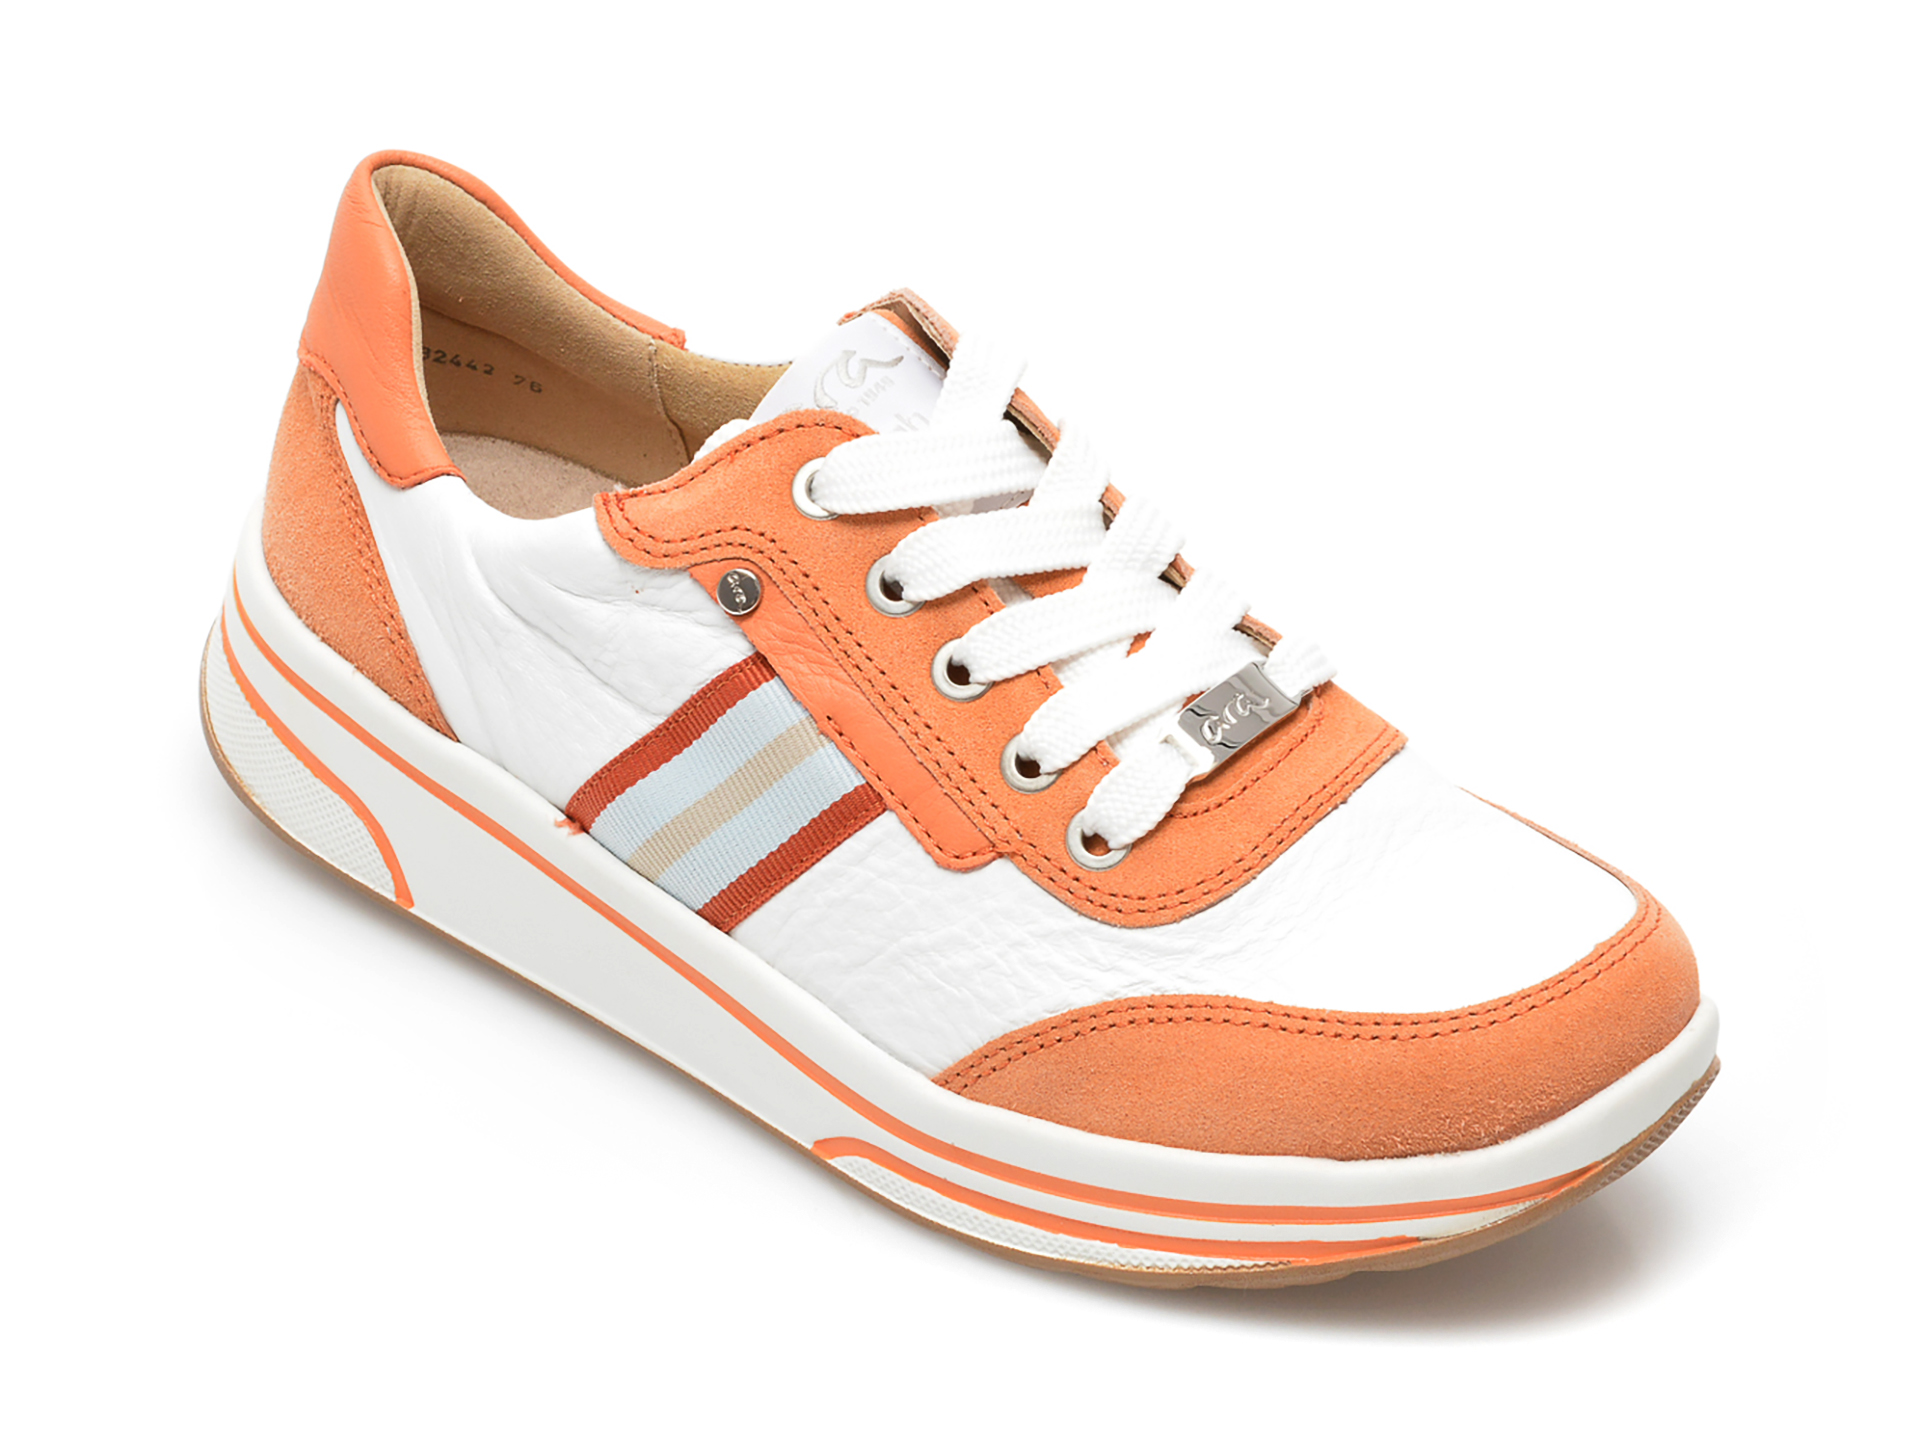 Pantofi sport ARA portocalii, 324429, din piele naturala